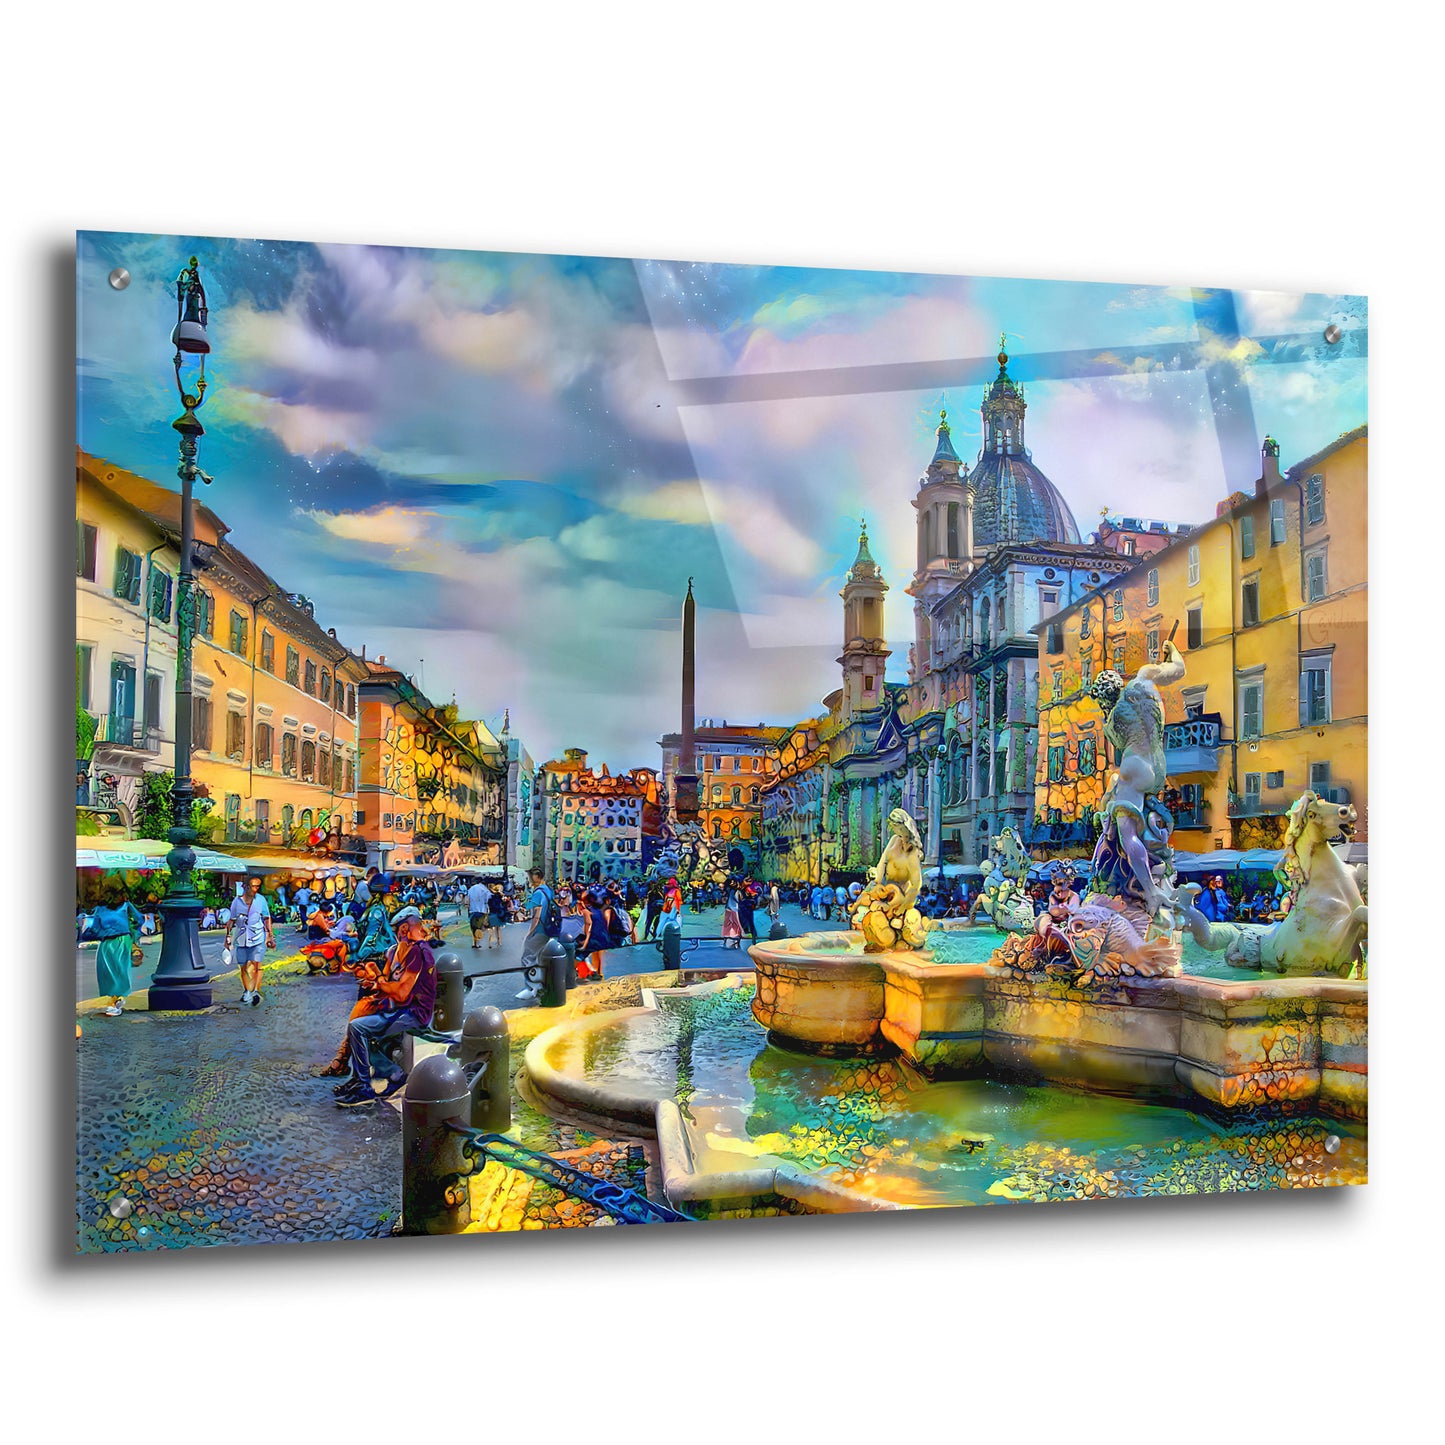 Epic Art 'Rome Italy Piazza Navona' by Pedro Gavidia, Acrylic Glass Wall Art,36x24